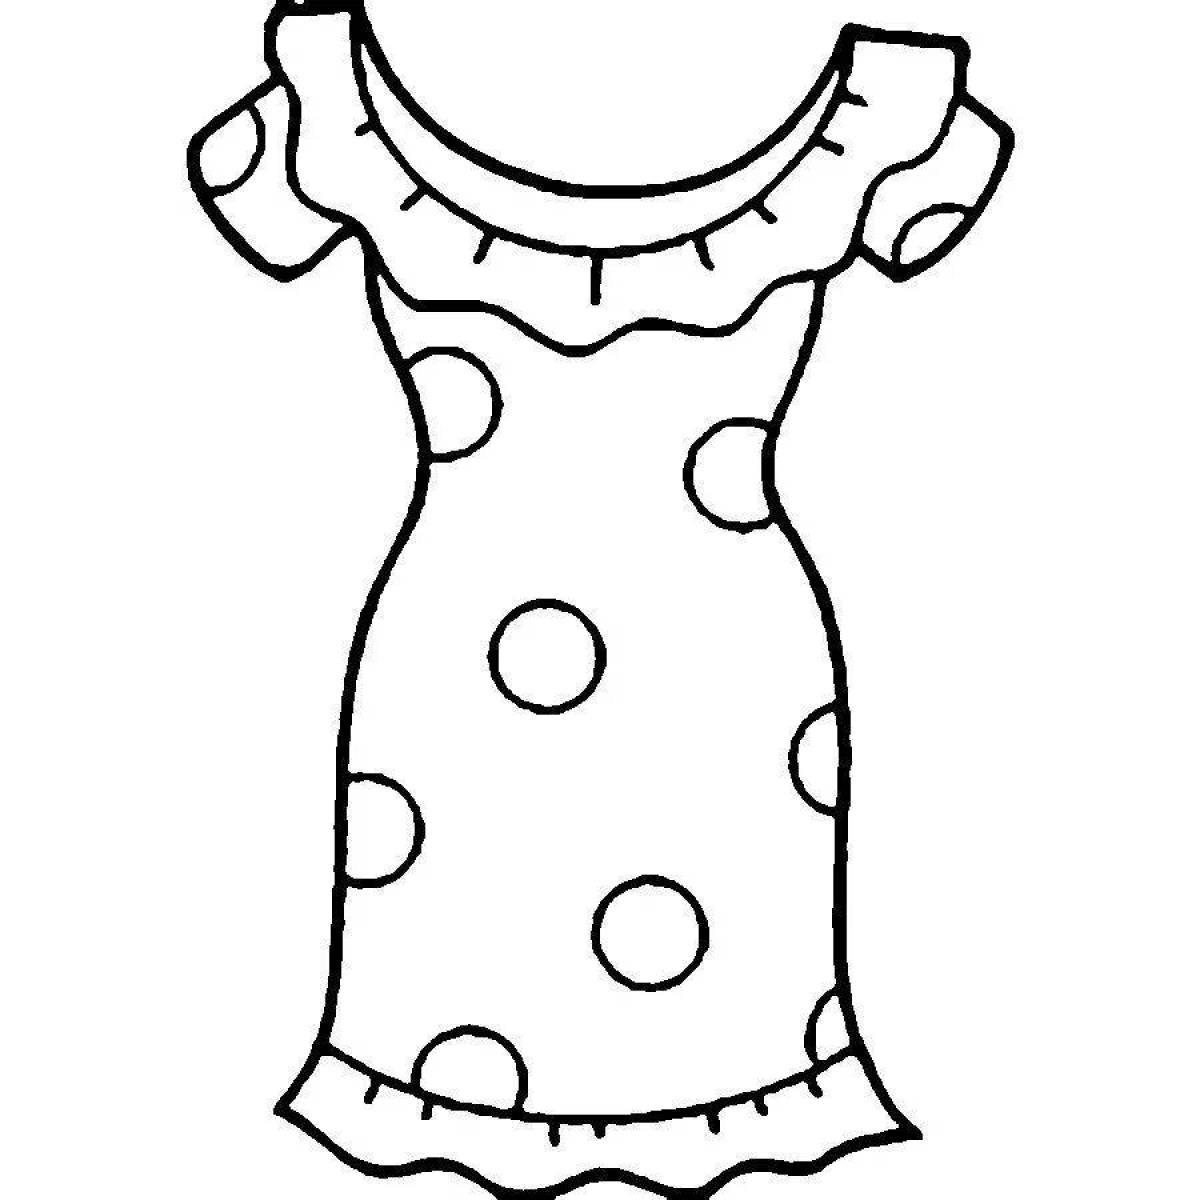 Раскраска радостное кукольное платье для детей 4-5 лет